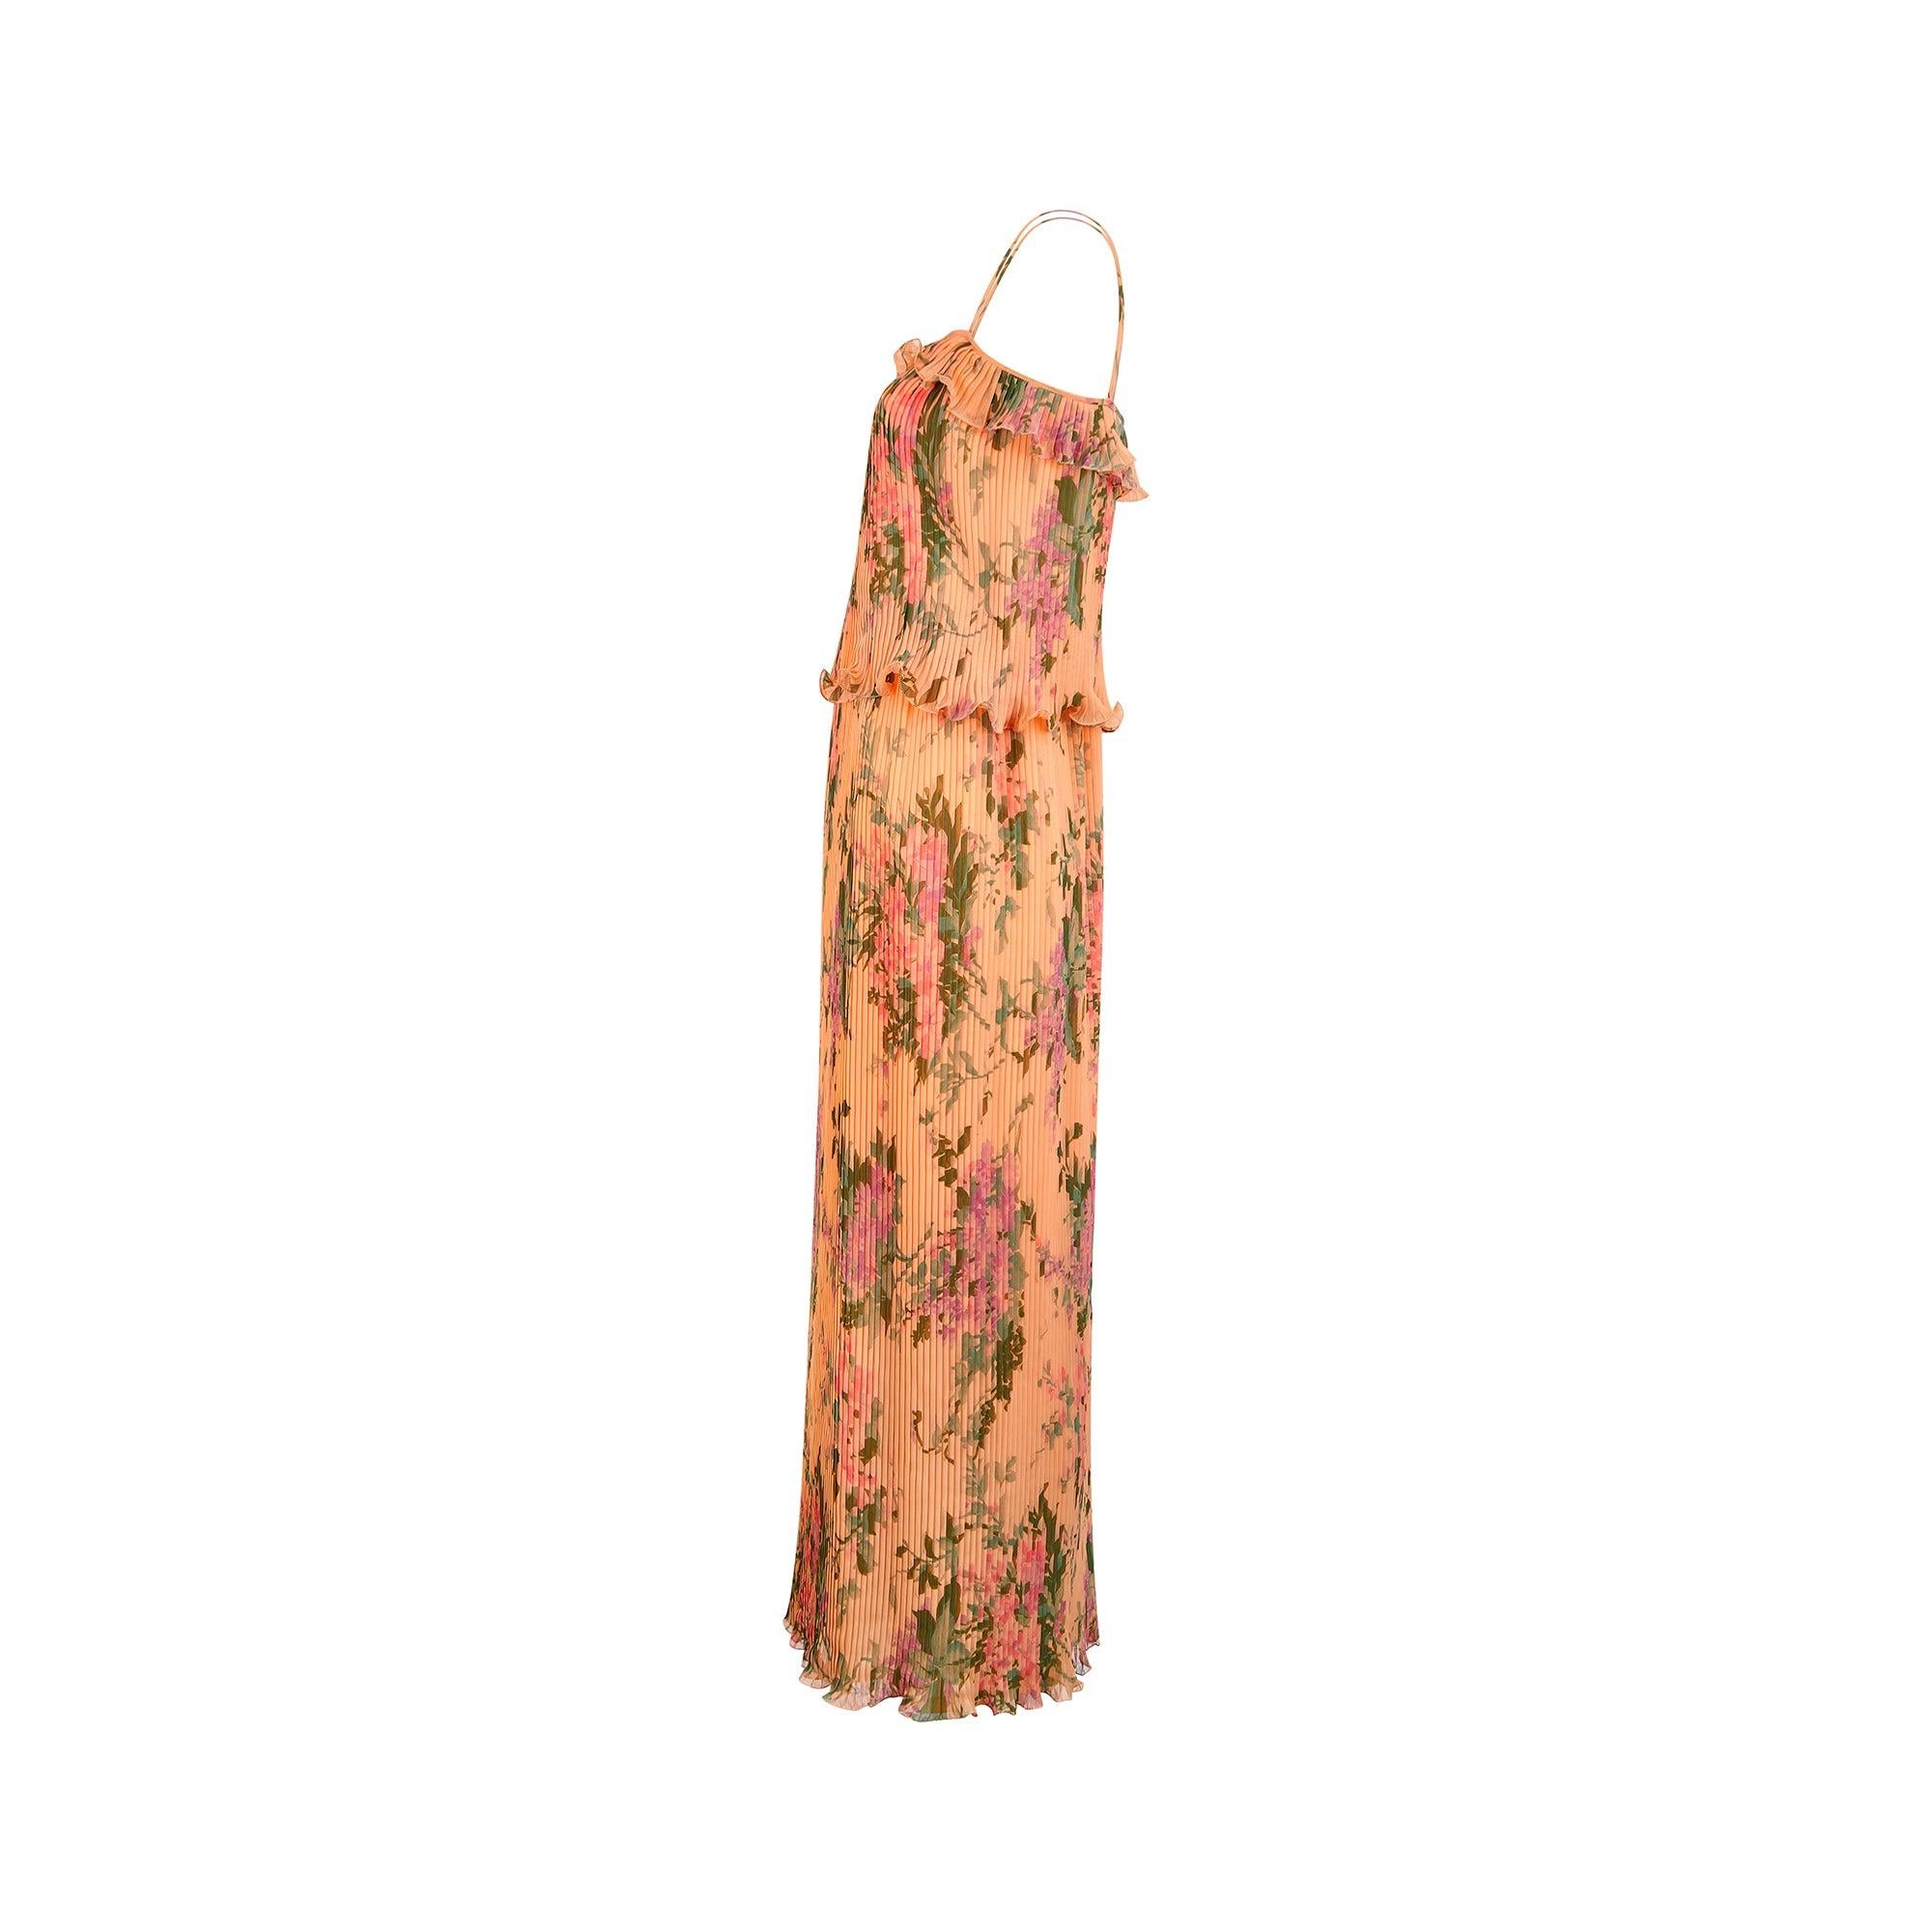 Cette robe longue des années 1970 a été achetée à Paris. Elle est confectionnée en mousseline de soie pêche artificielle parsemée de fleurs lilas et roses audacieuses. Plié sur toute sa surface grâce à une technique innovante qui permet de conserver